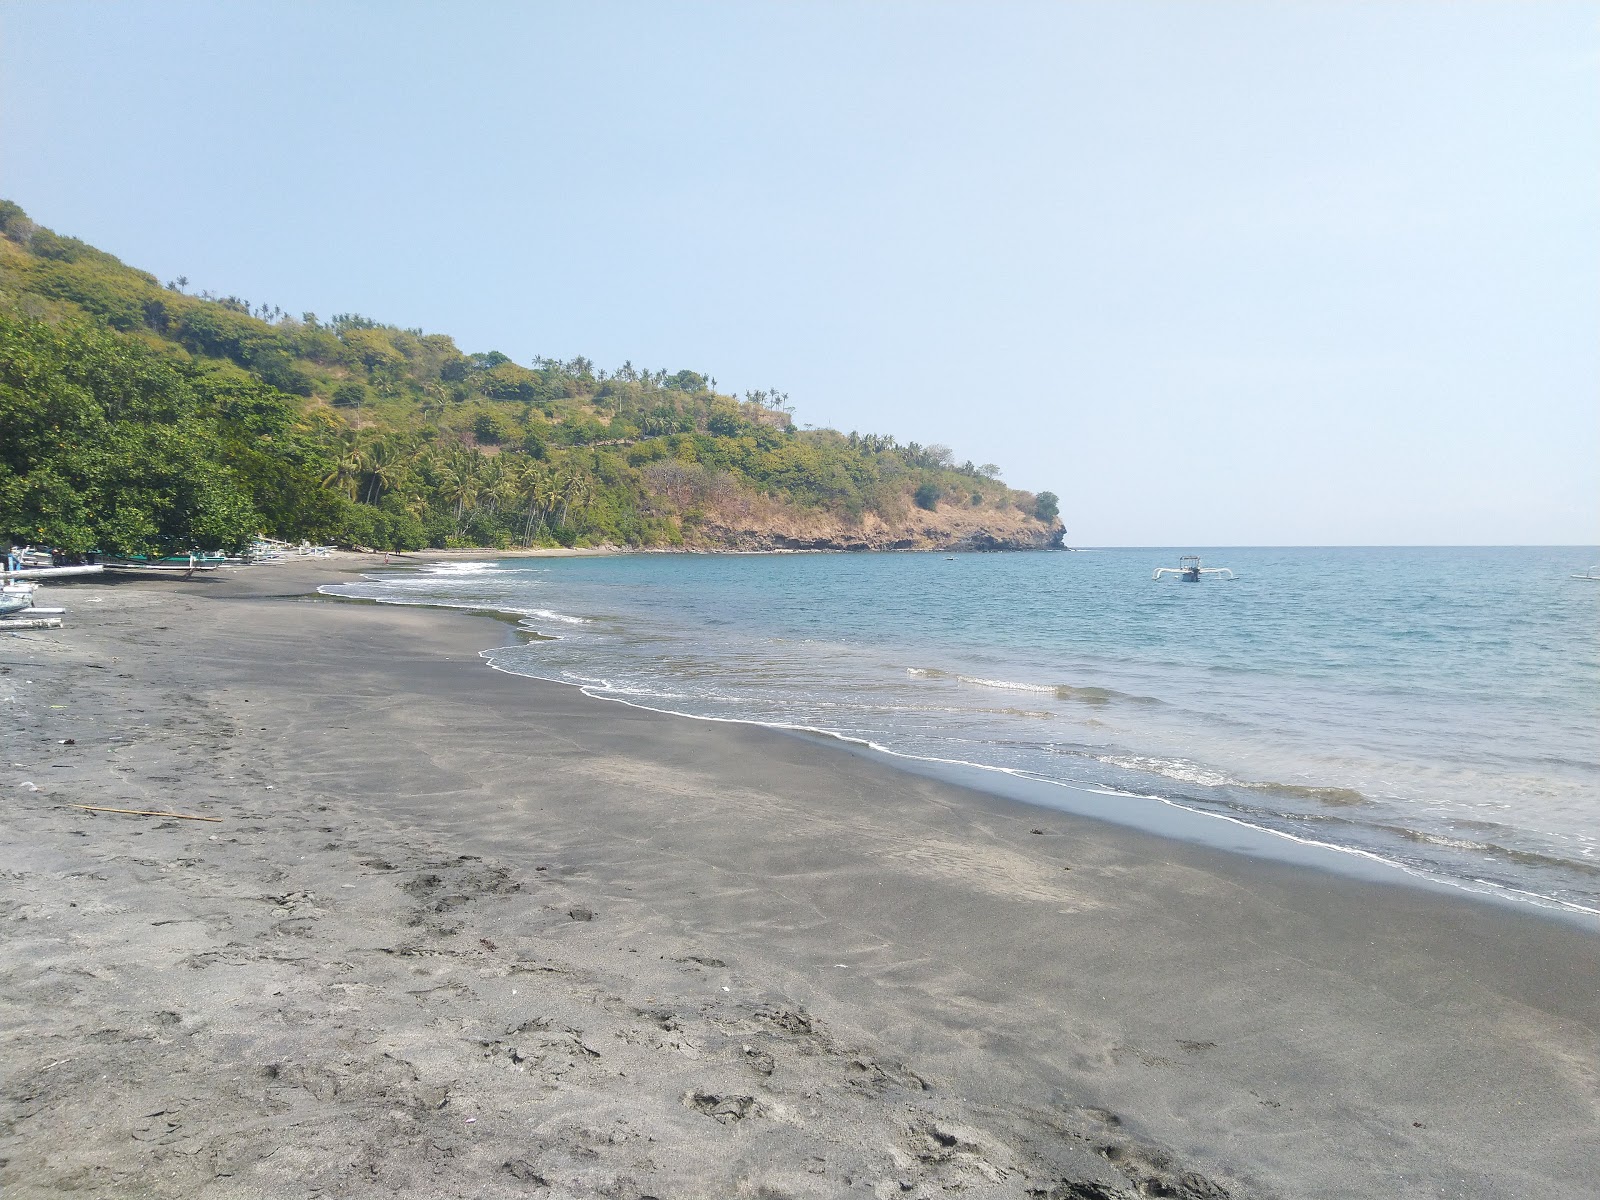 Zdjęcie Pantai malimbu z powierzchnią jasny piasek